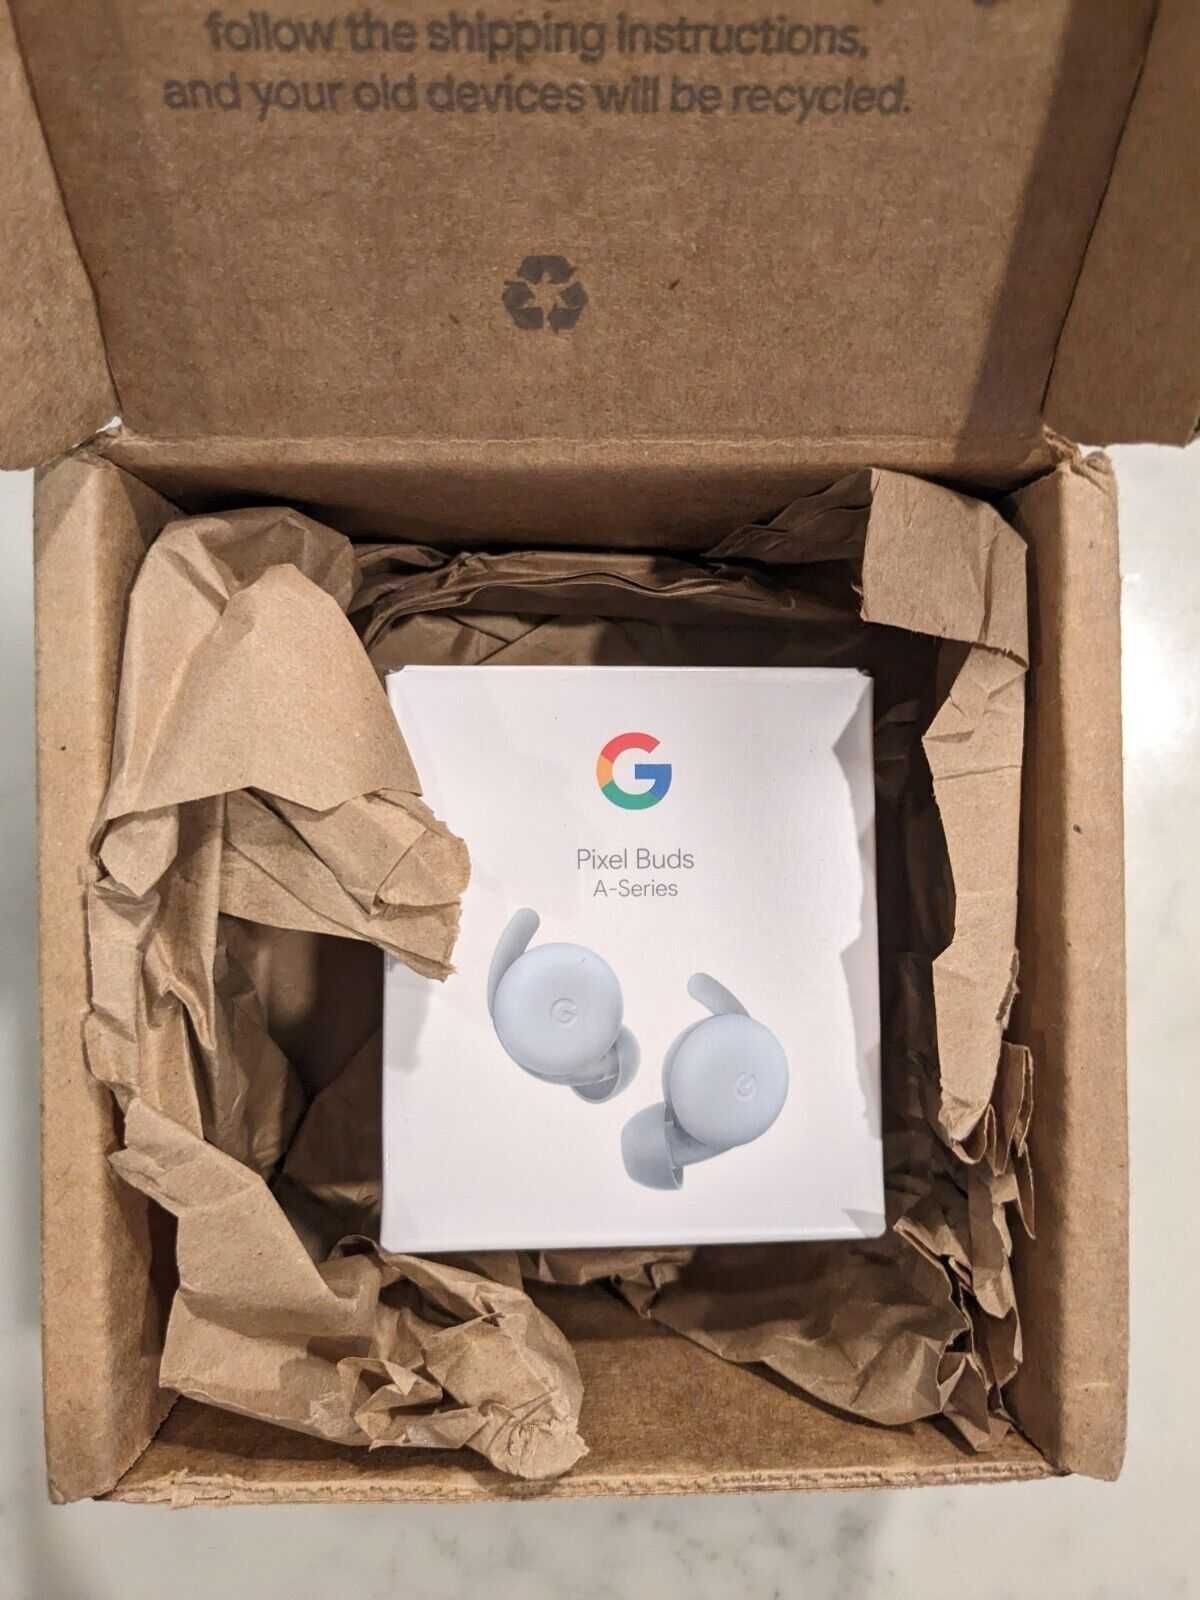 Google Pixel Buds A-series